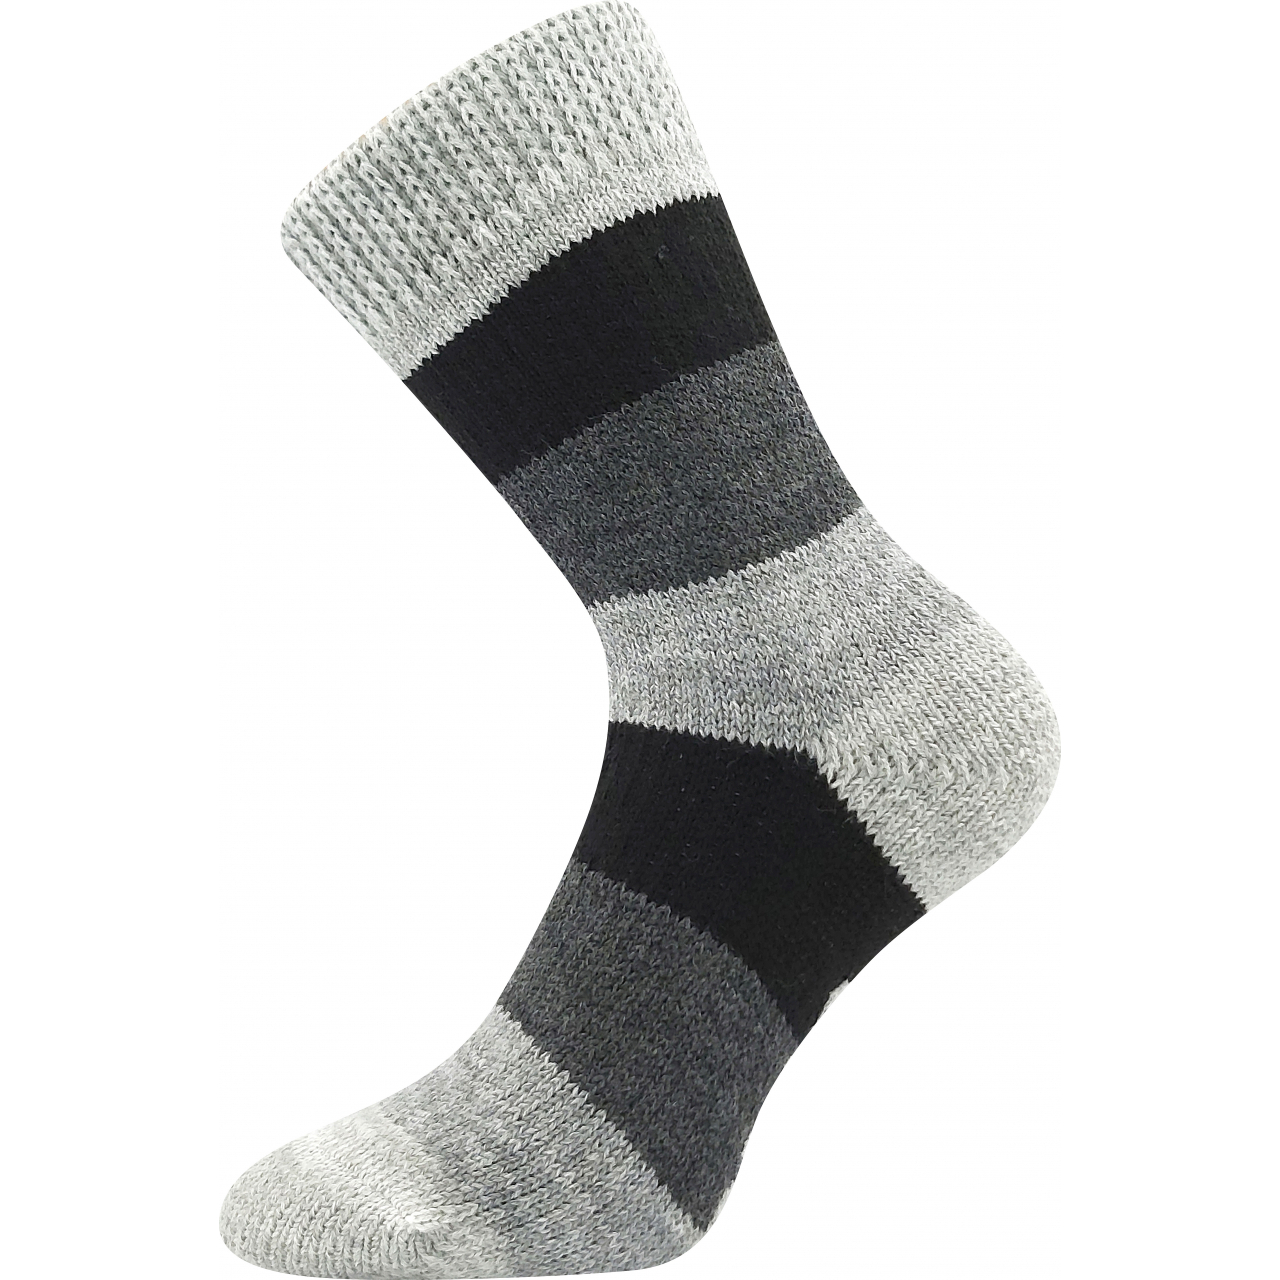 Ponožky spací unisex Boma Spací Pruh - šedé-černé, 39-42